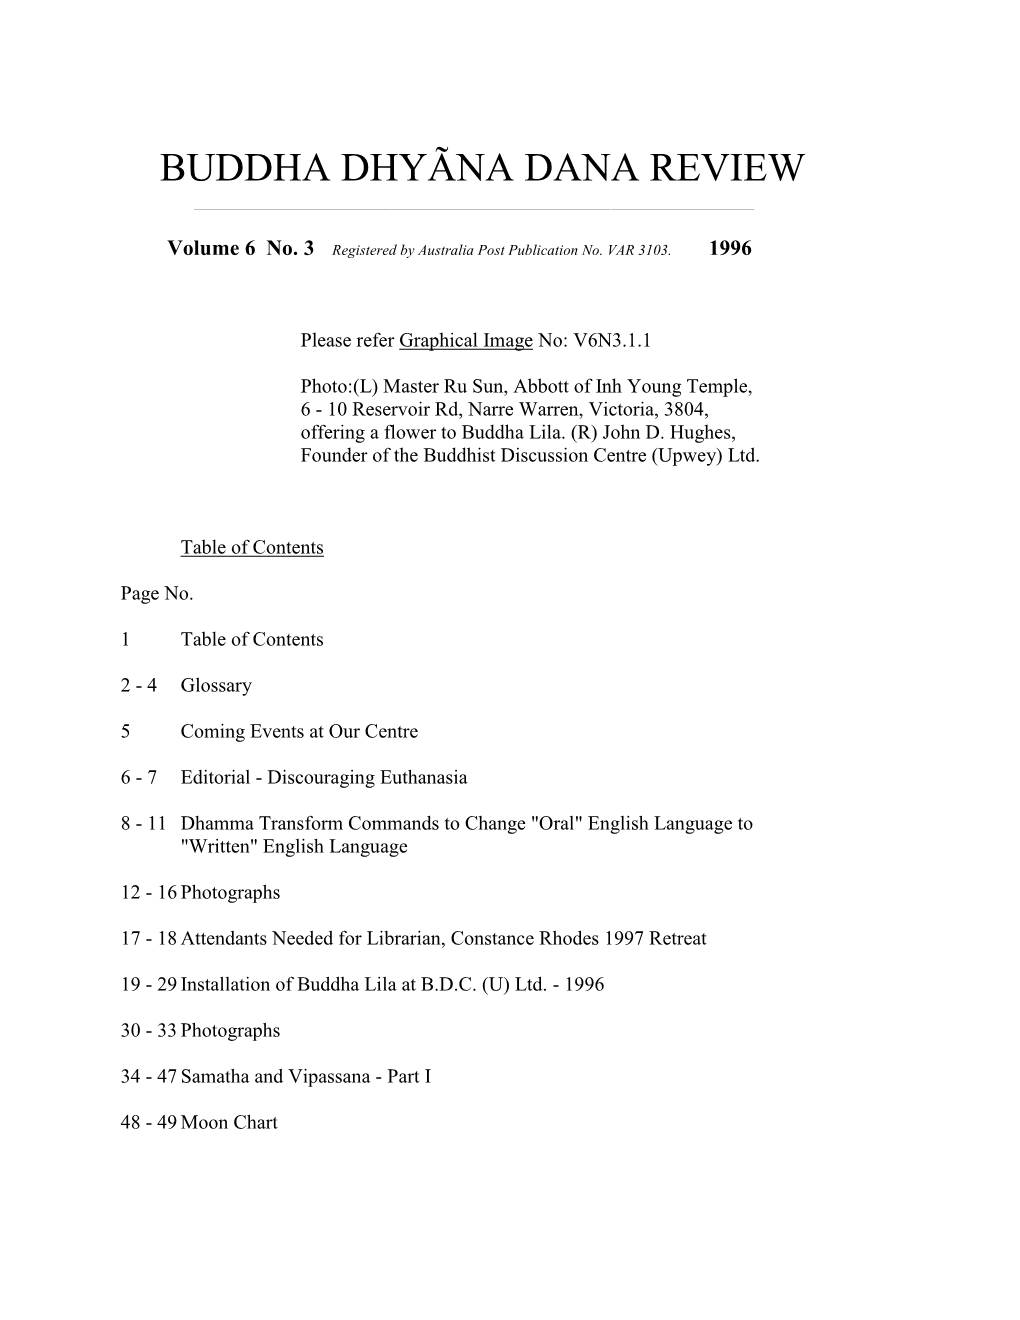 Buddha Dhyãna Dana Review